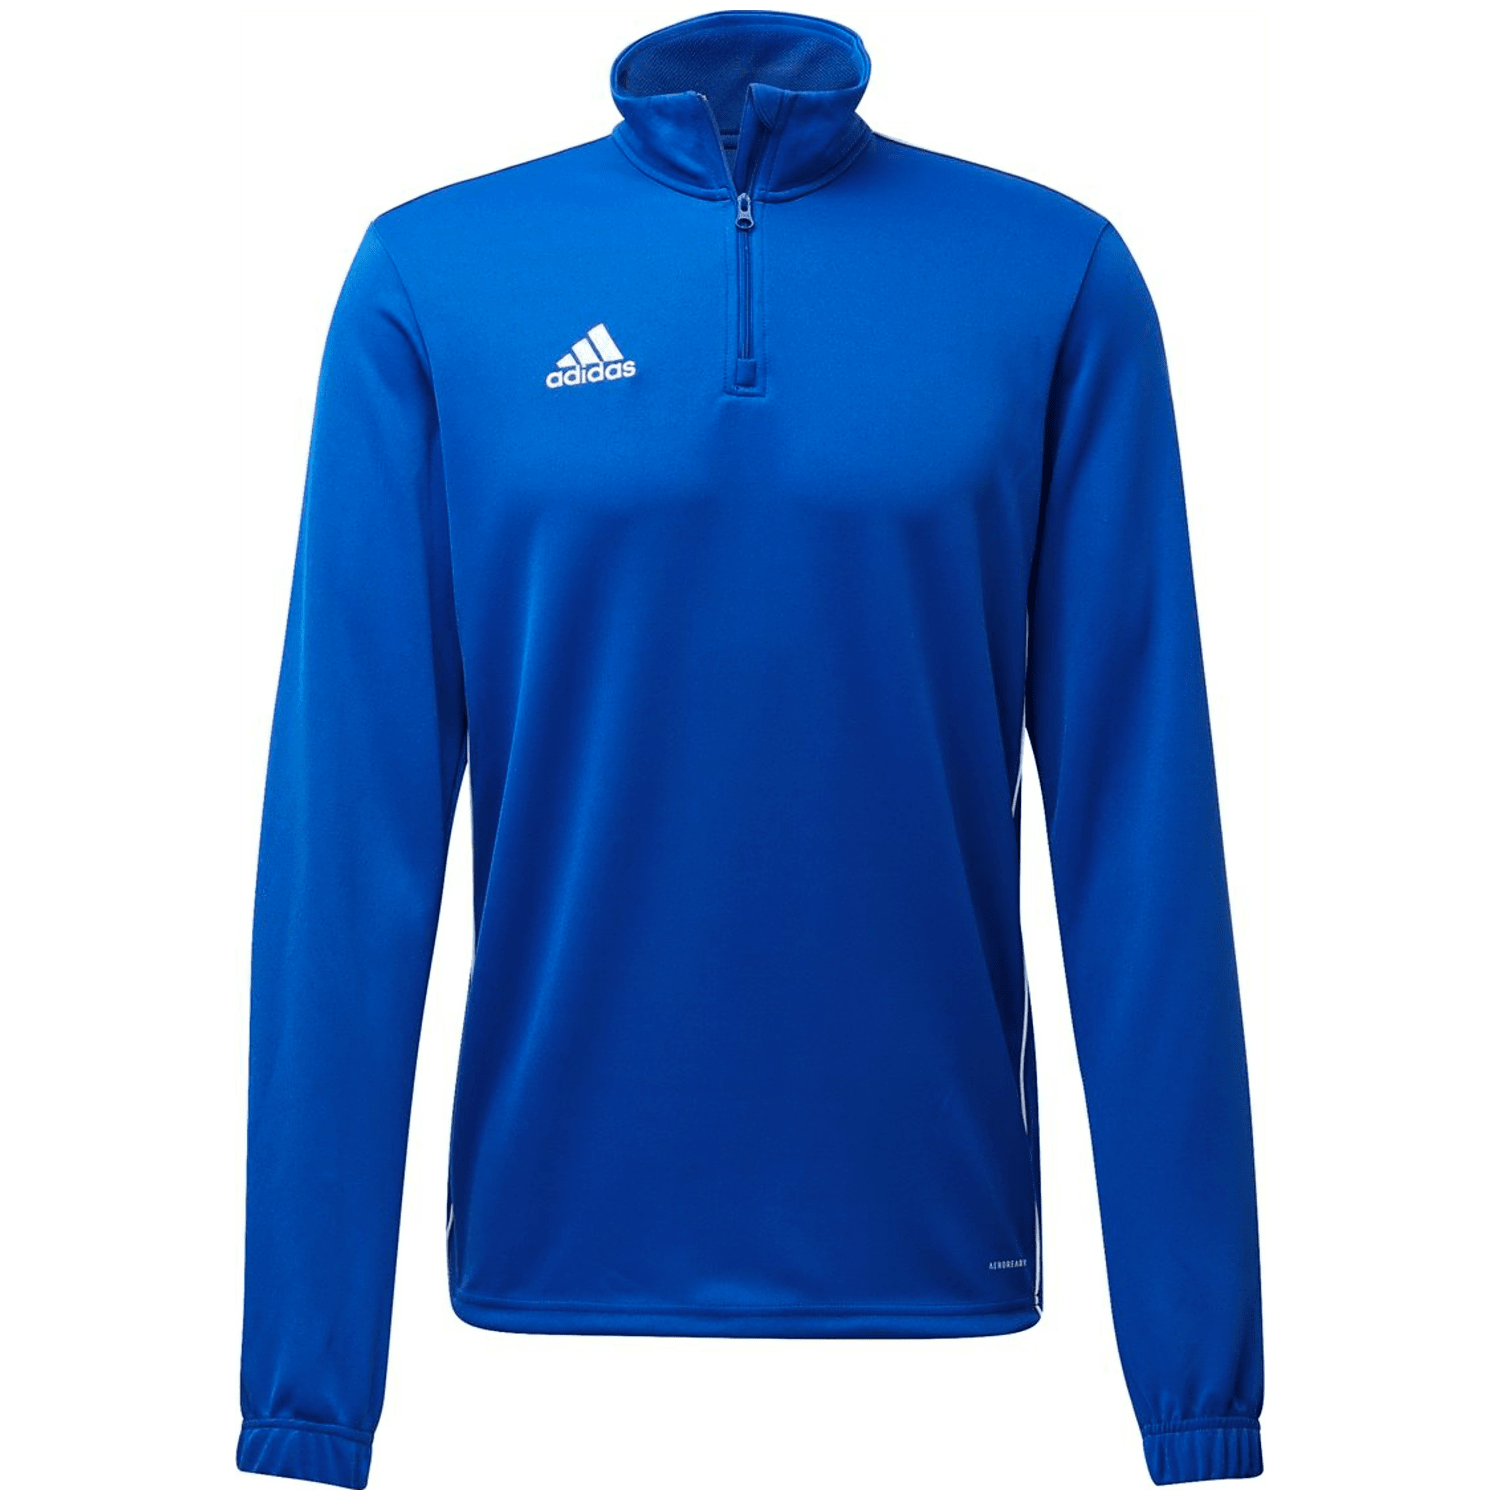 Adidas Core 18 Trainingstop Herren Sweatshirt